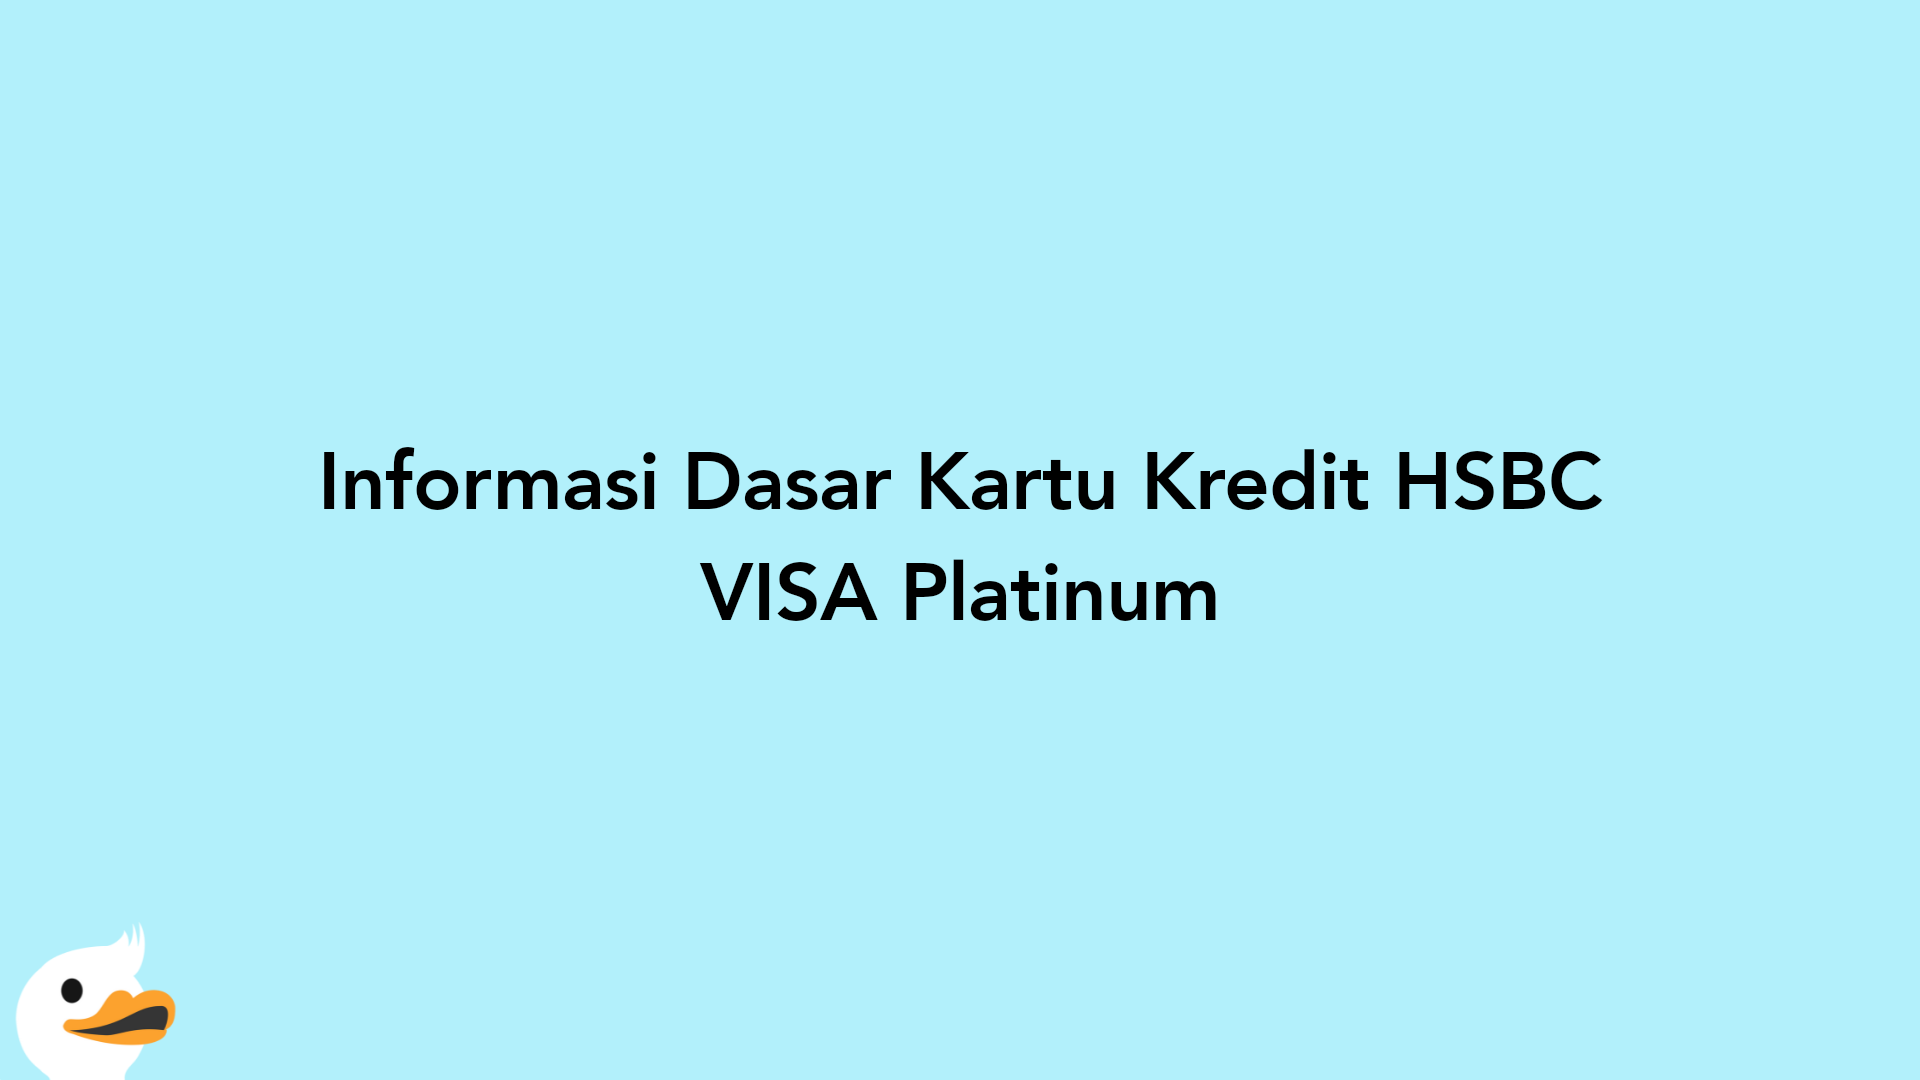 Informasi Dasar Kartu Kredit HSBC VISA Platinum